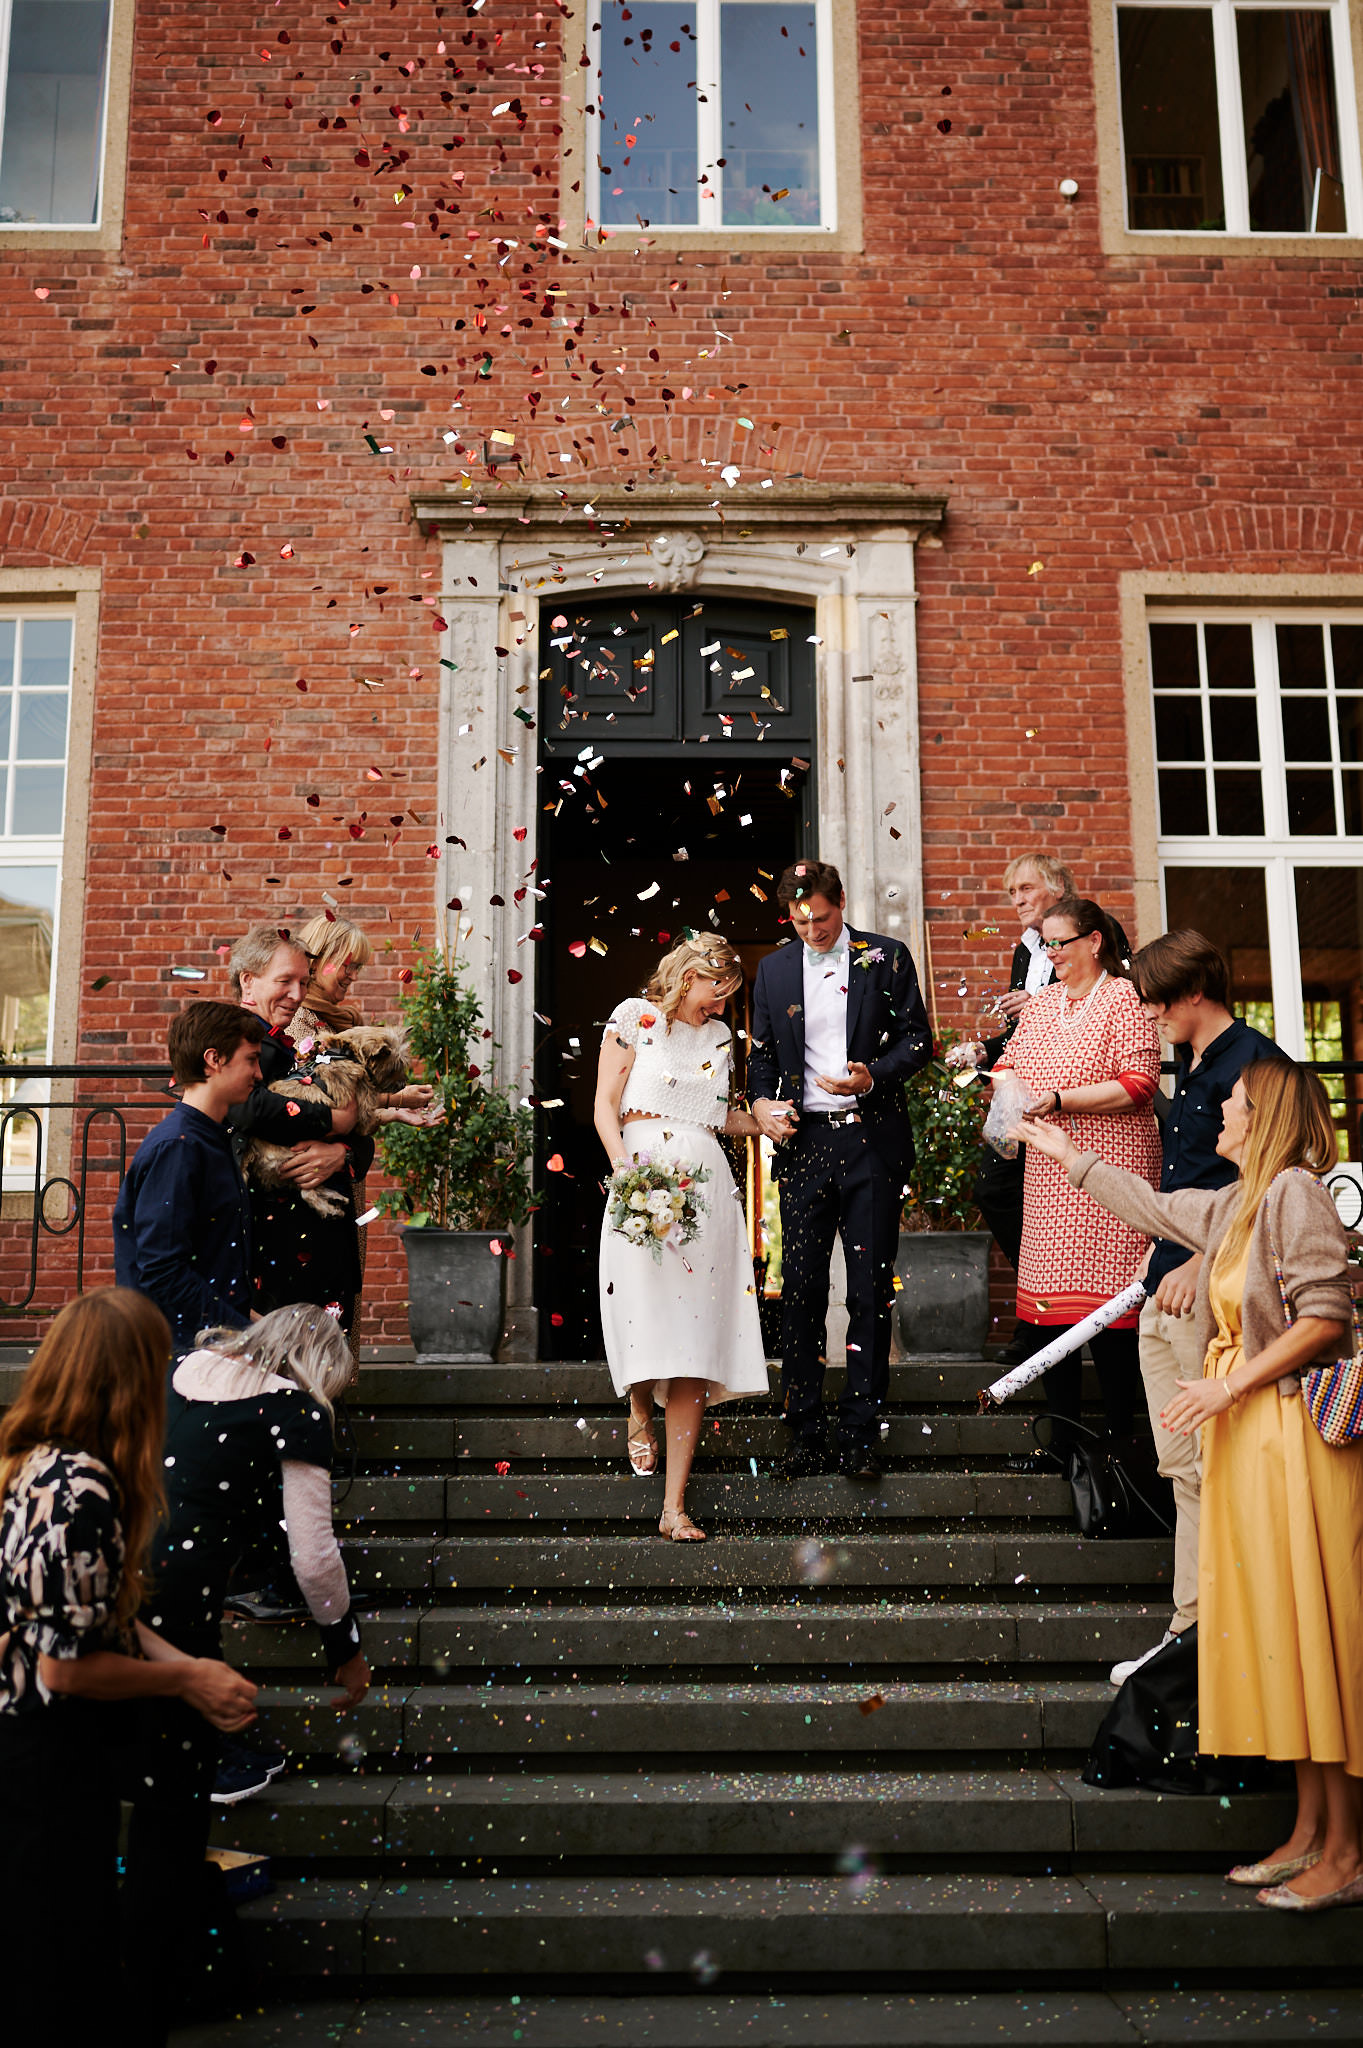 Ein frisch vermähltes Paar verlässt Schloss Wissen, während Gäste Konfetti werfen, um ihre Hochzeit zu feiern.